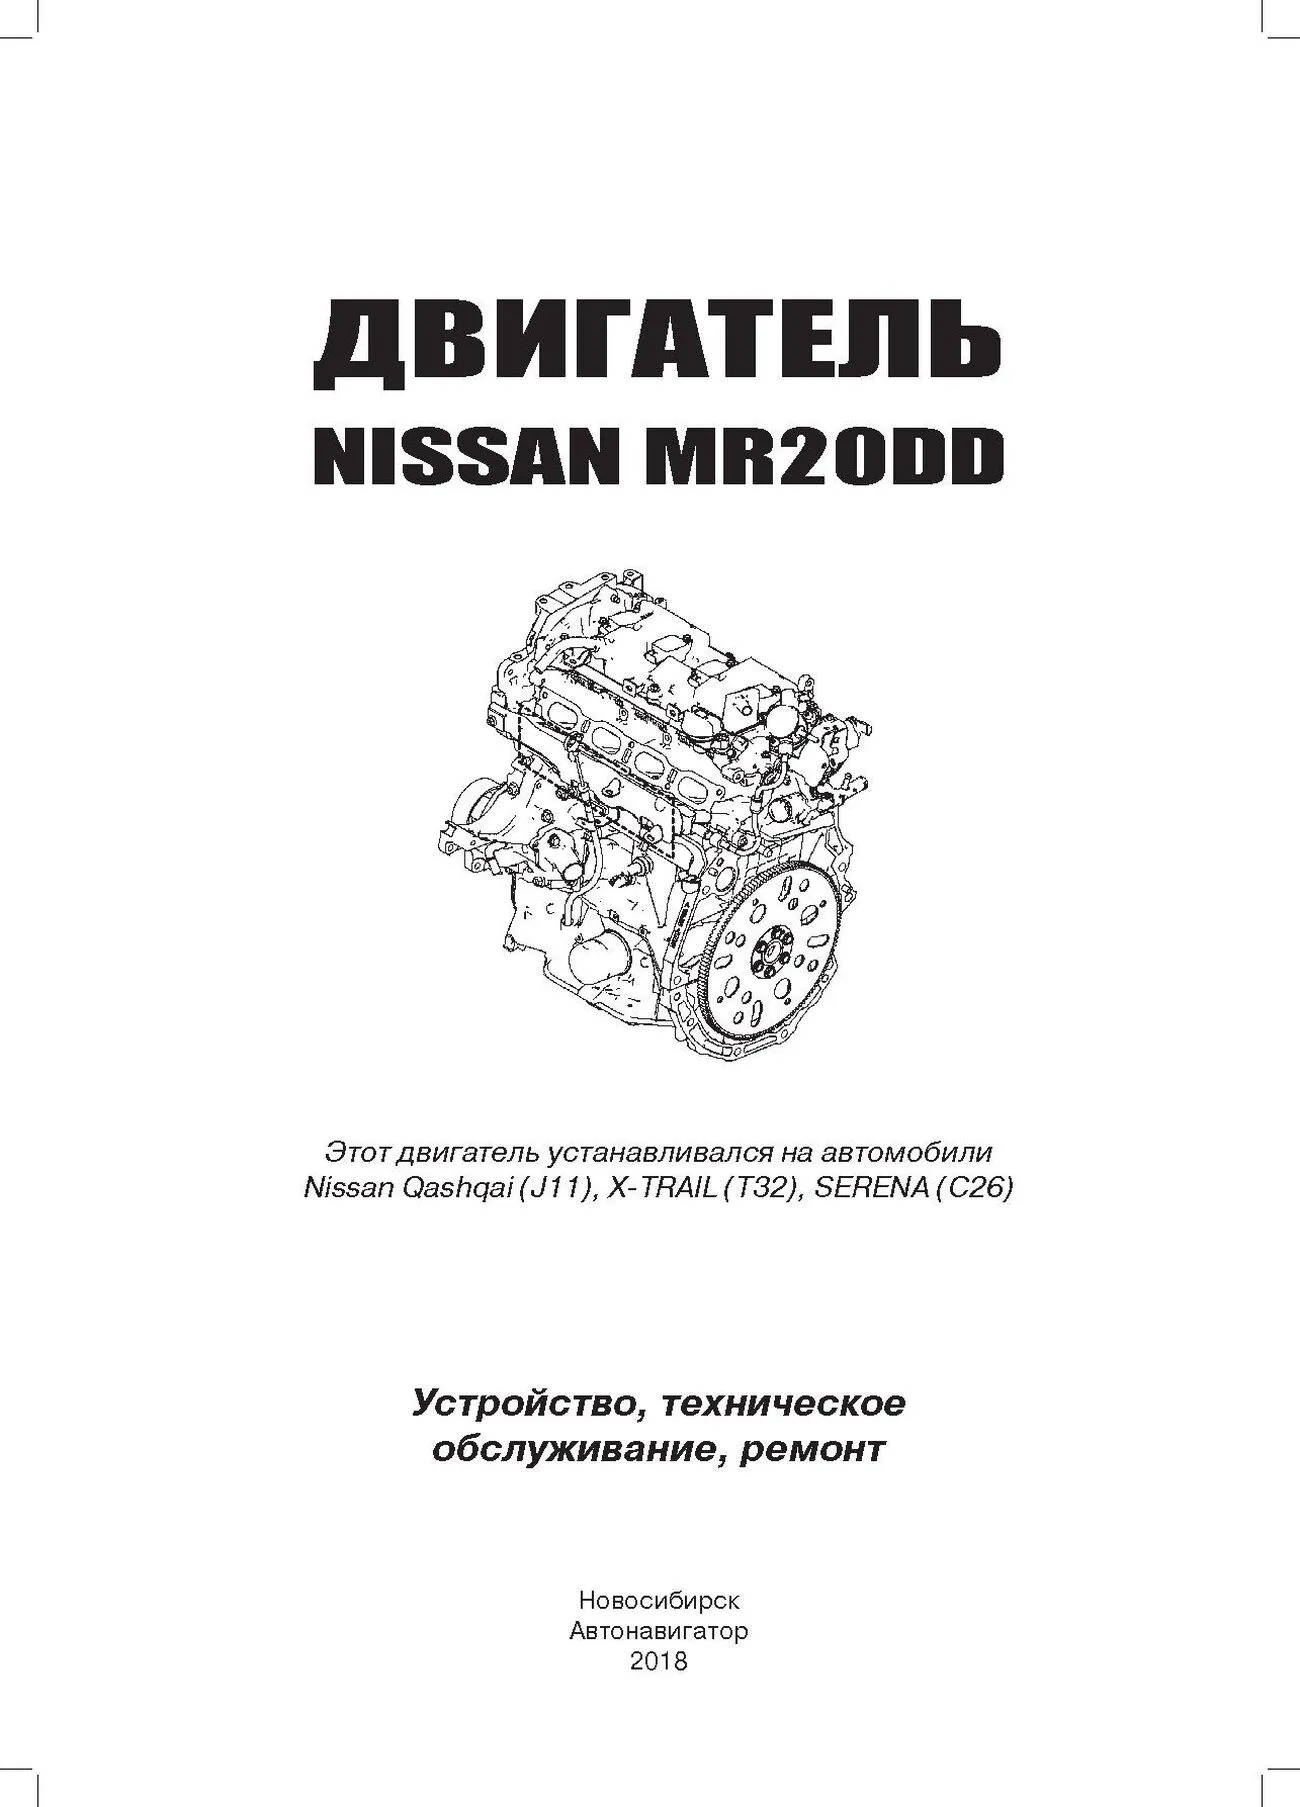 Книга: Бензиновые двигатели NISSAN MR20DD рем., экспл., то | Автонавигатор